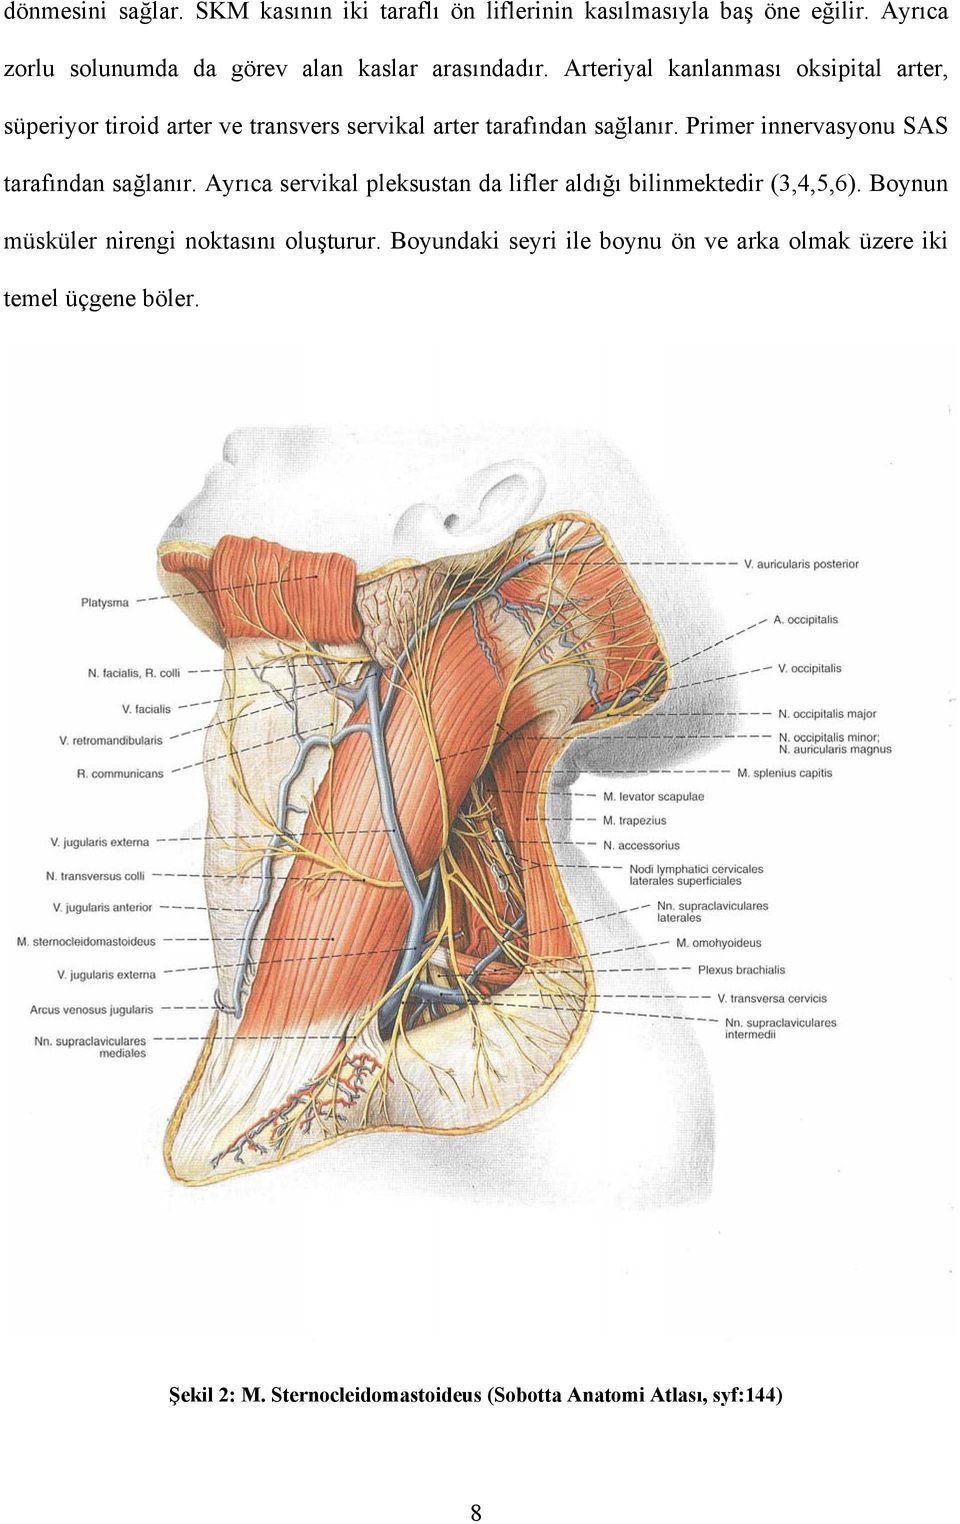 Arteriyal kanlanması oksipital arter, süperiyor tiroid arter ve transvers servikal arter tarafından sağlanır.